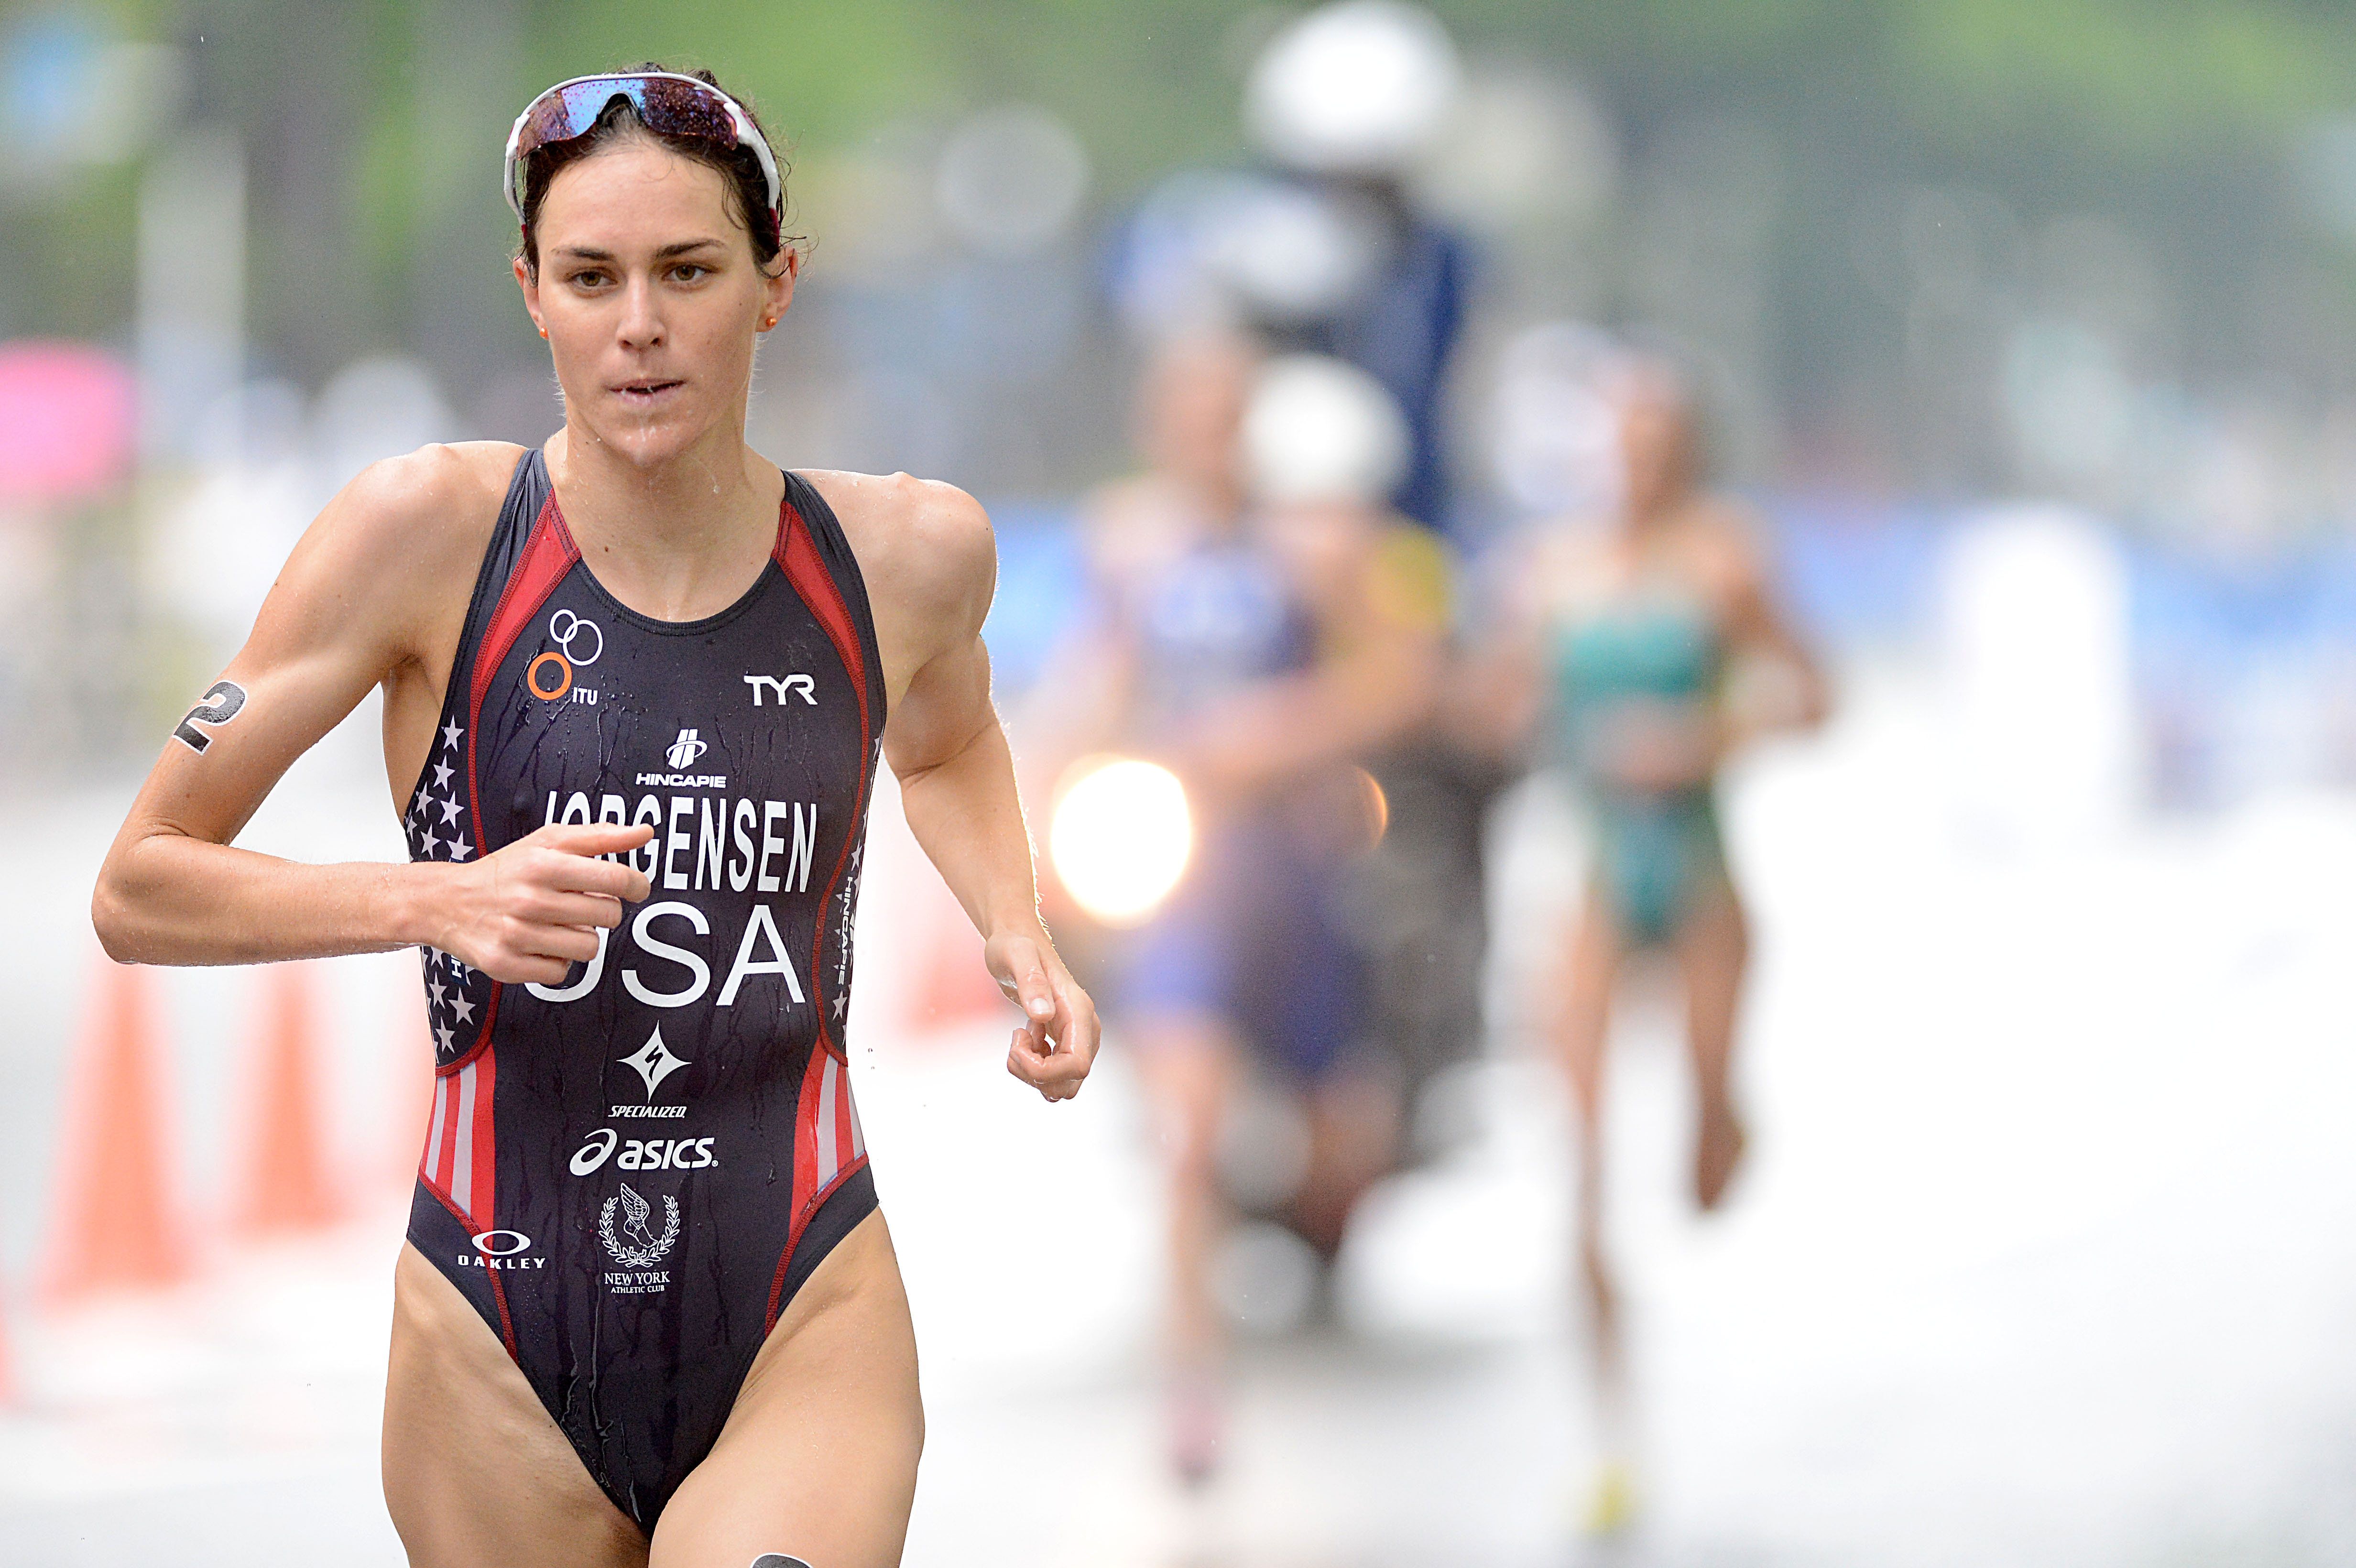 How Gwen Jorgensen's 10K Time Stacks Up | Triathlete.com